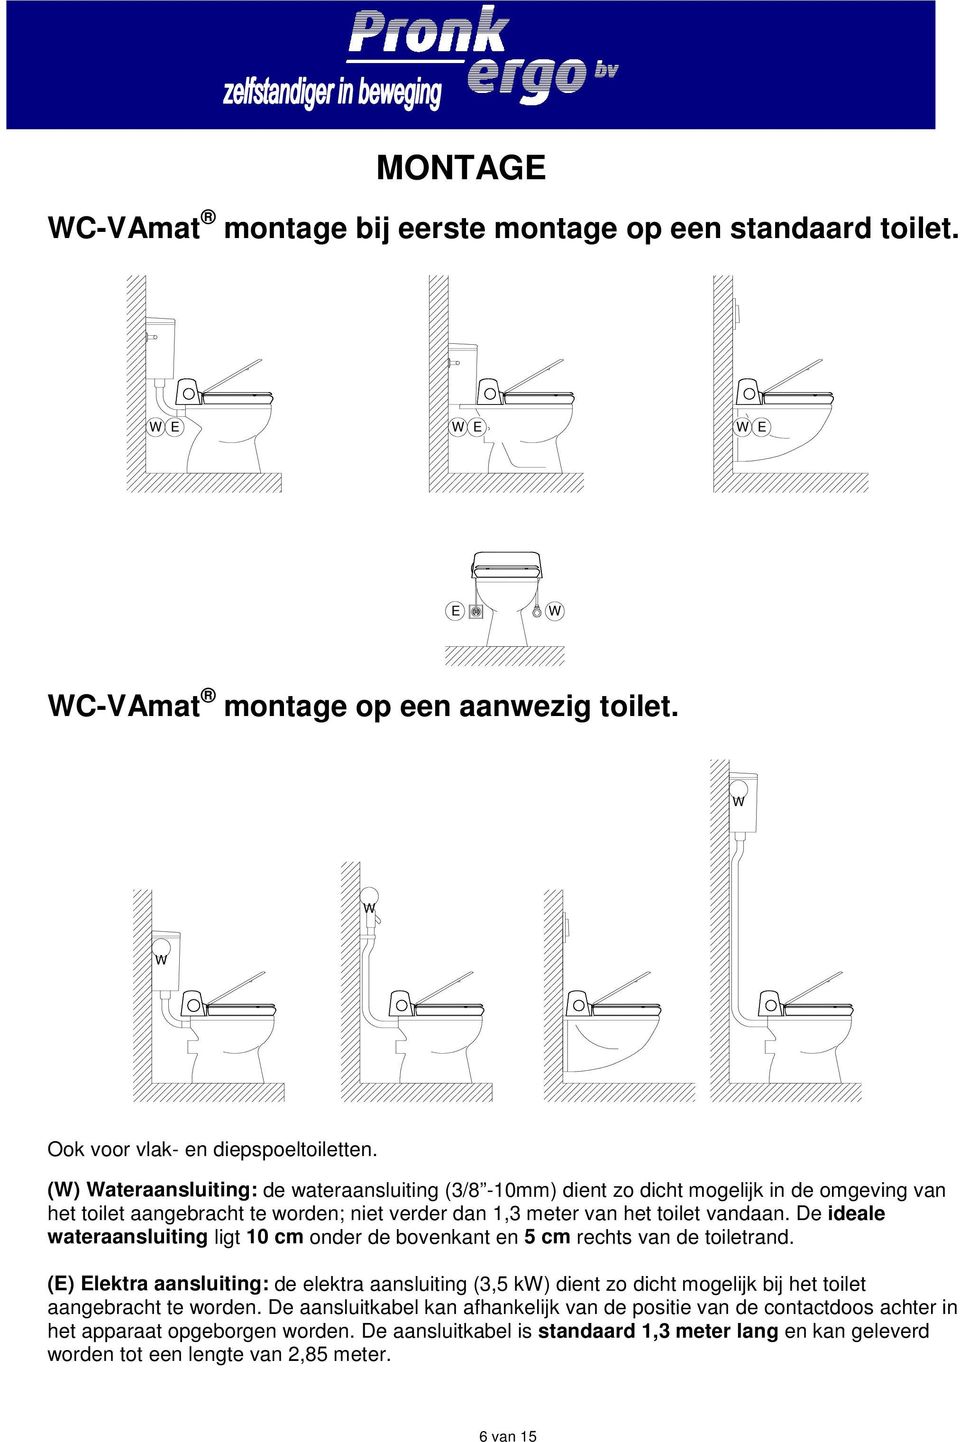 De ideale wateraansluiting ligt 10 cm onder de bovenkant en 5 cm rechts van de toiletrand.